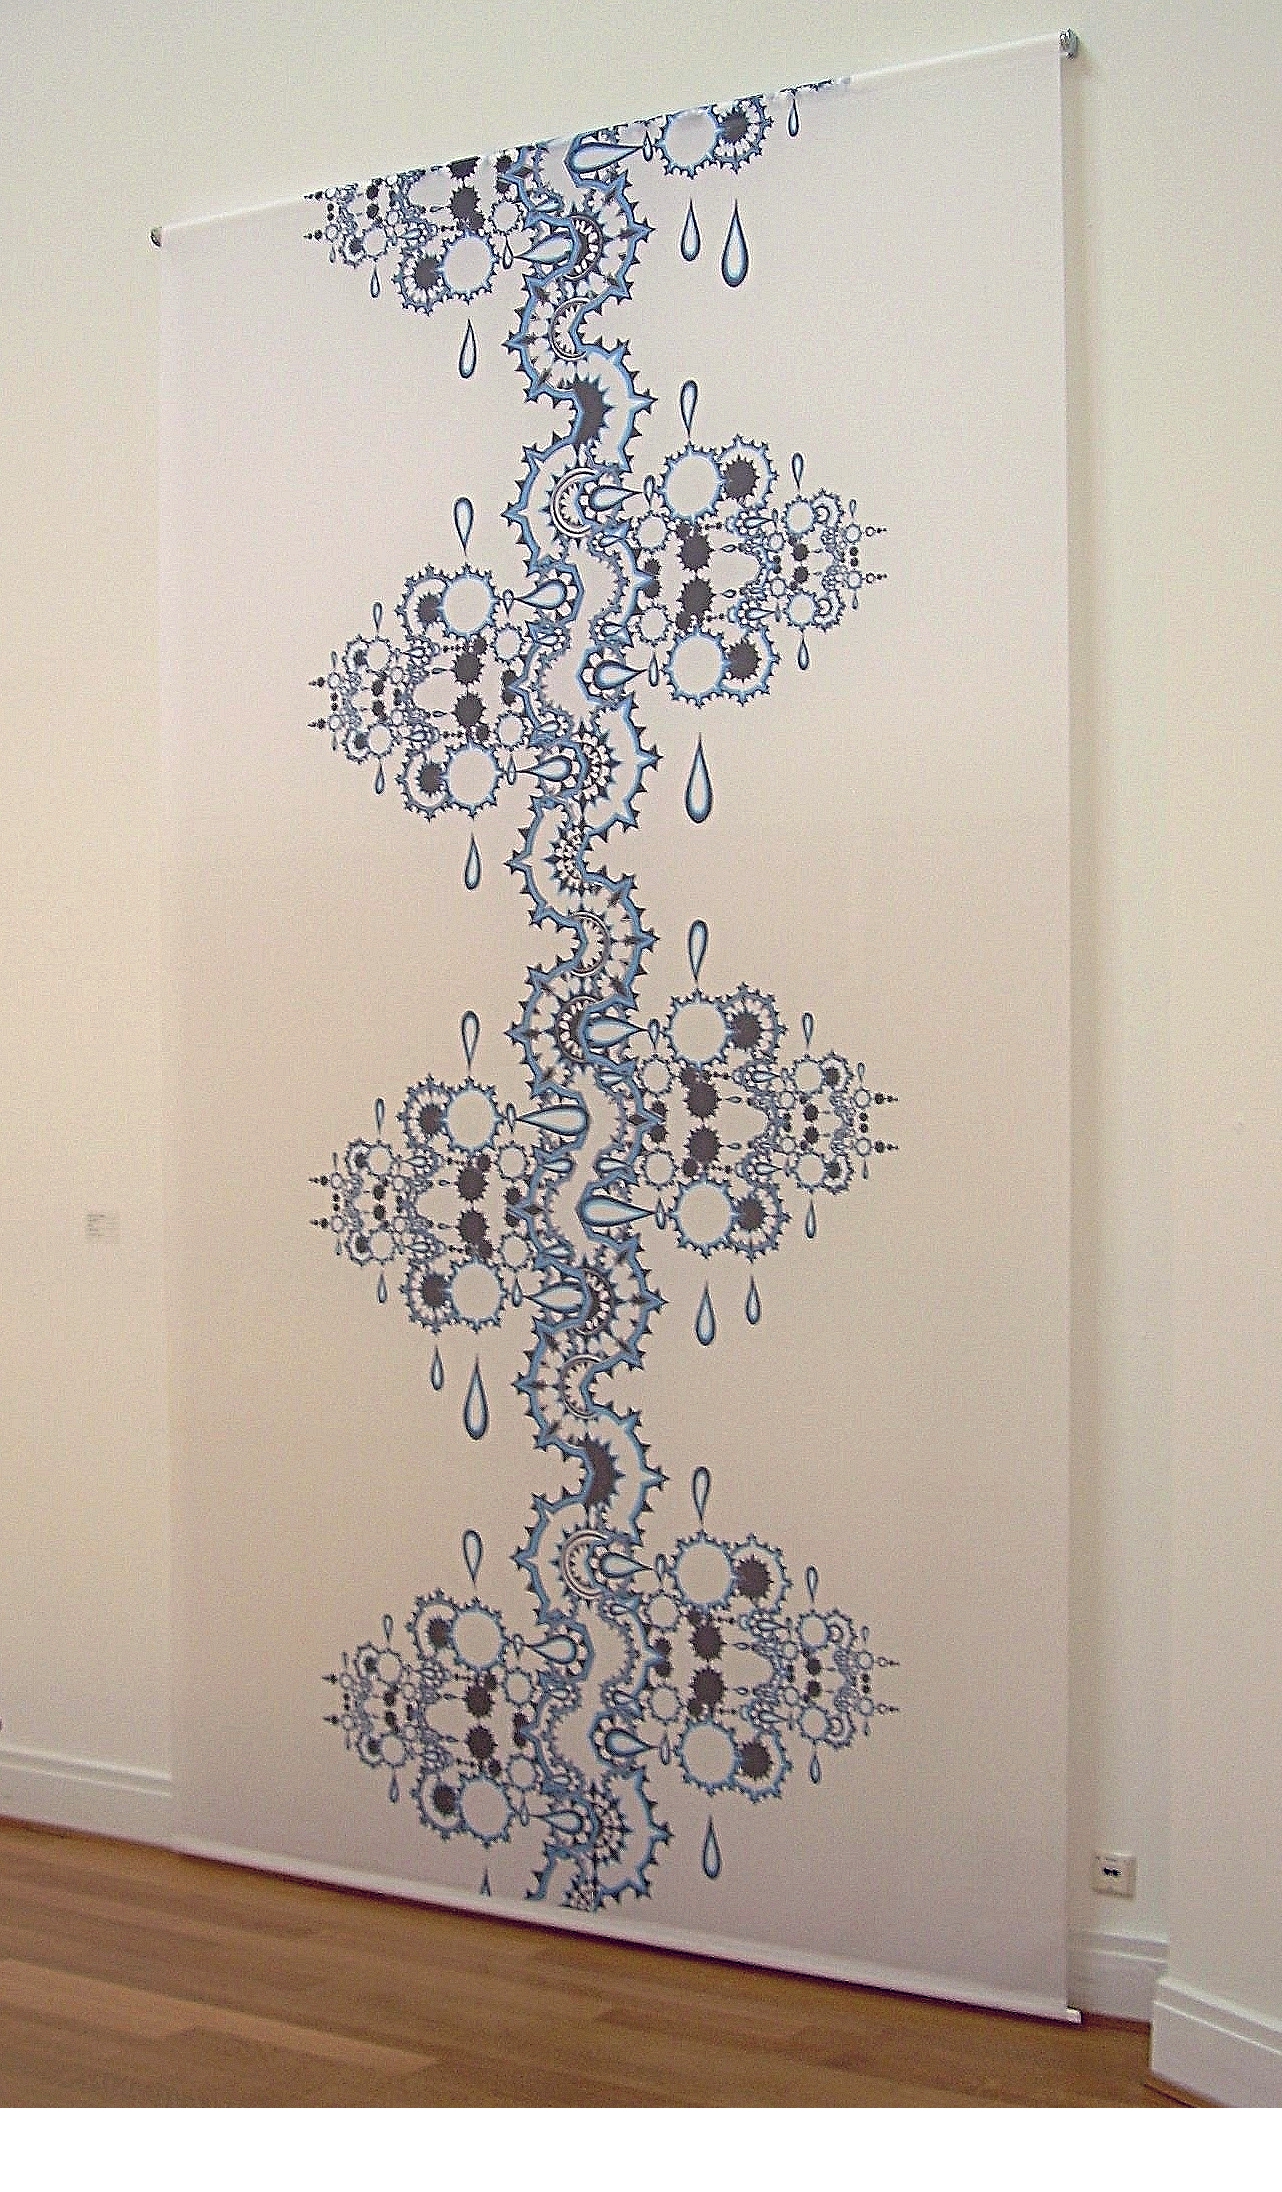 Infinite roller blind, 2003, print on solvotex, 210x480 cm